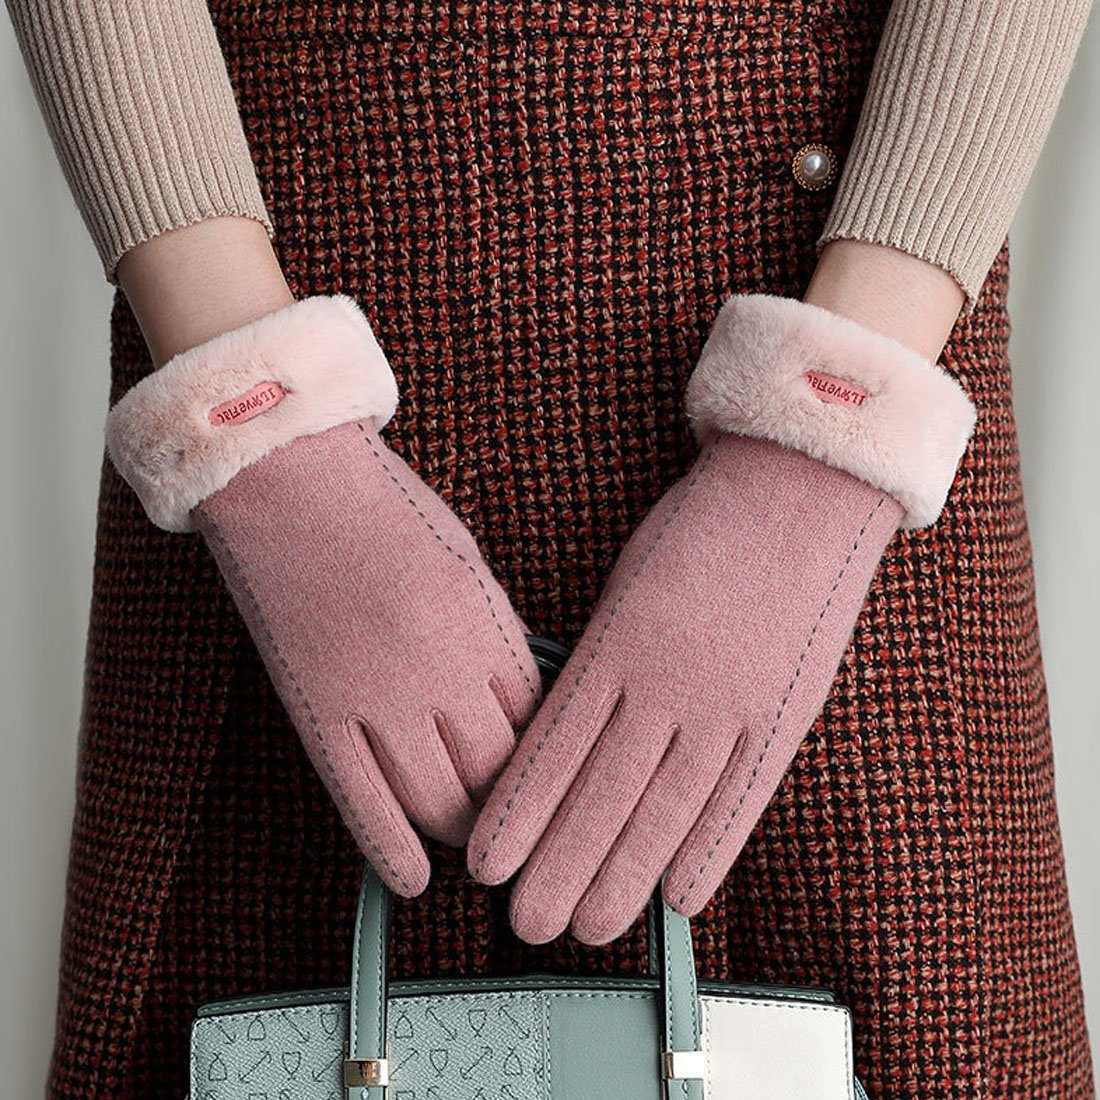 Touchscreen Cashmere Winter Fleecehandschuhe Damen DÖRÖY Reithandschuhe,Faux Warme Handschuhe Rosa